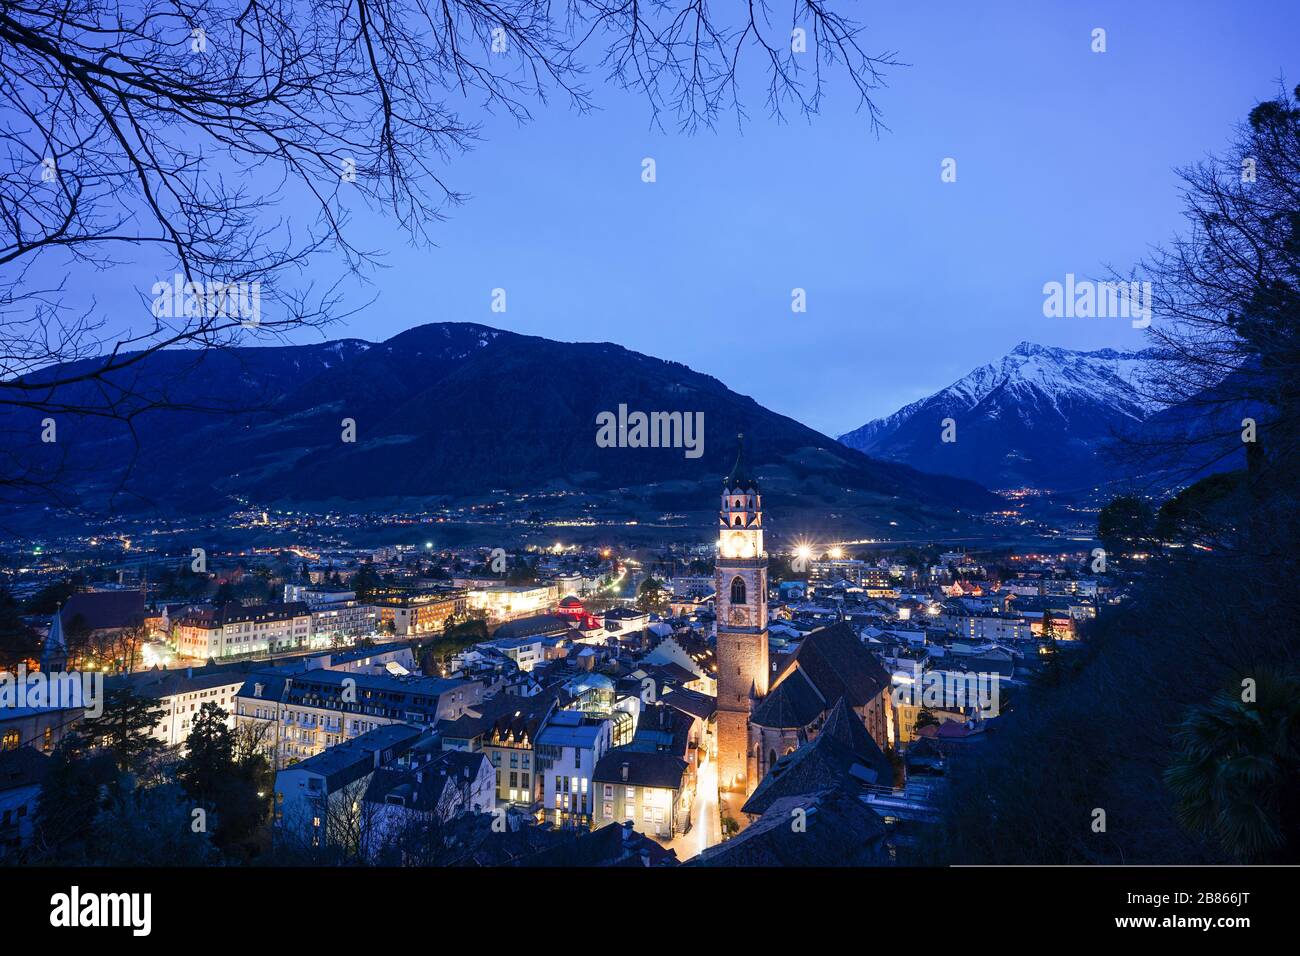 Lo skyline della città di Merano/Merano in Alto Adige, Italia durante la notte Foto Stock